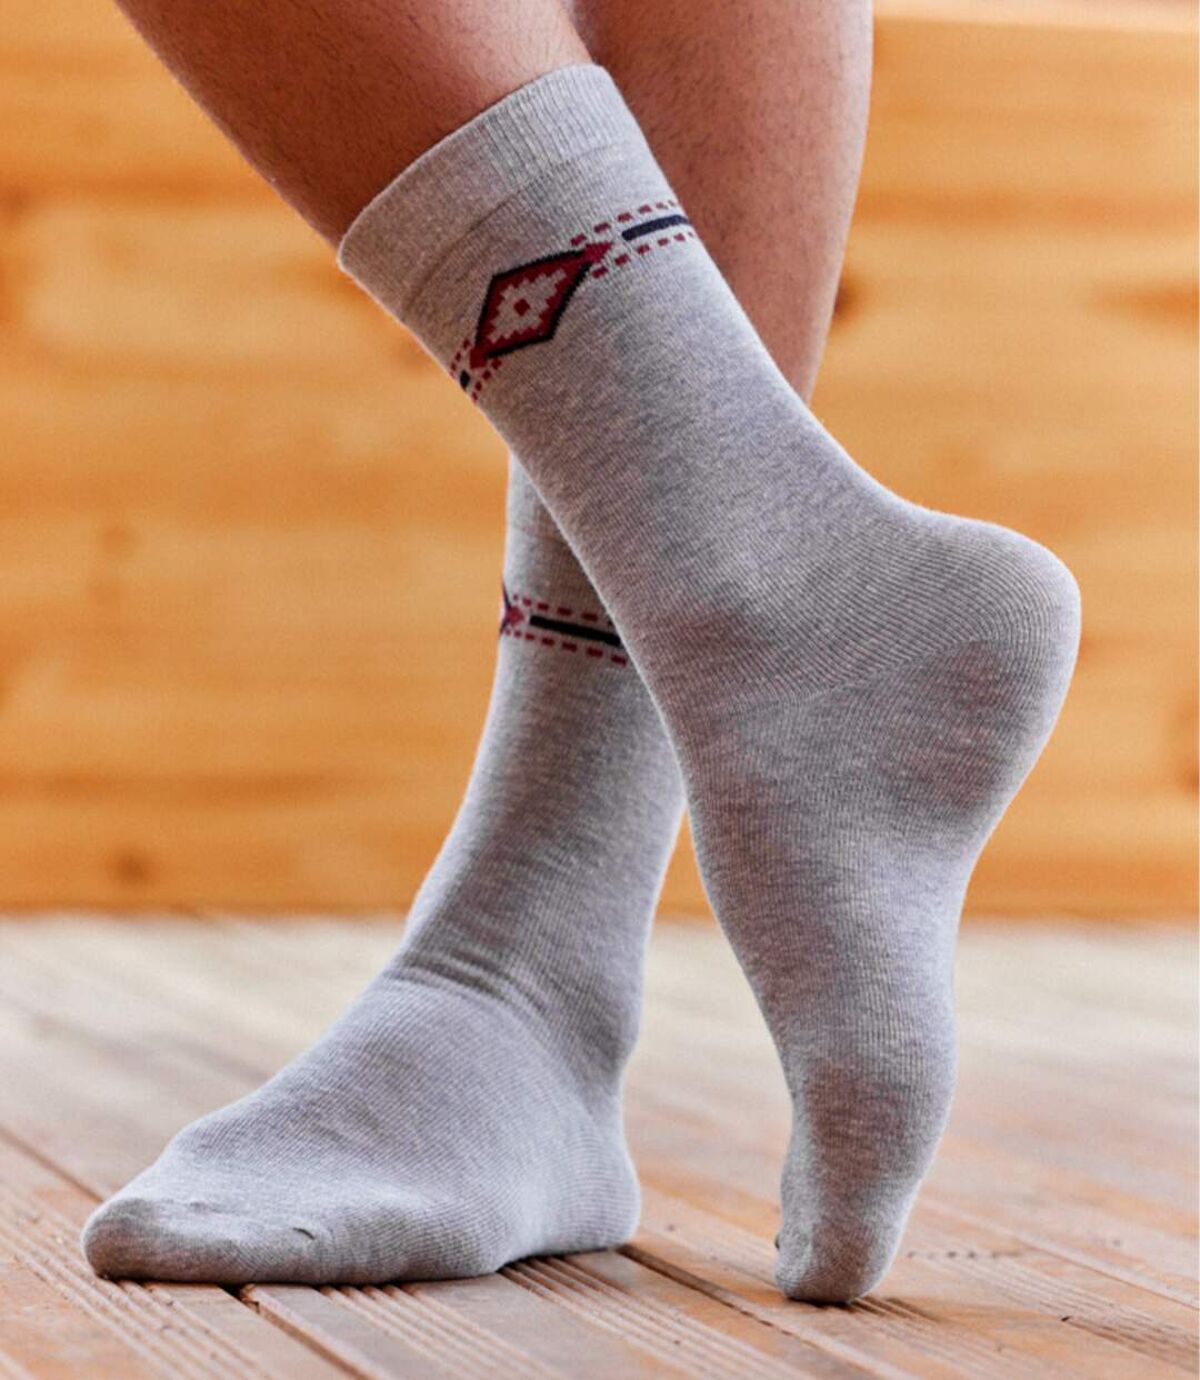 Sada 5 párov ponožiek v darčekovom balení Atlas For Men